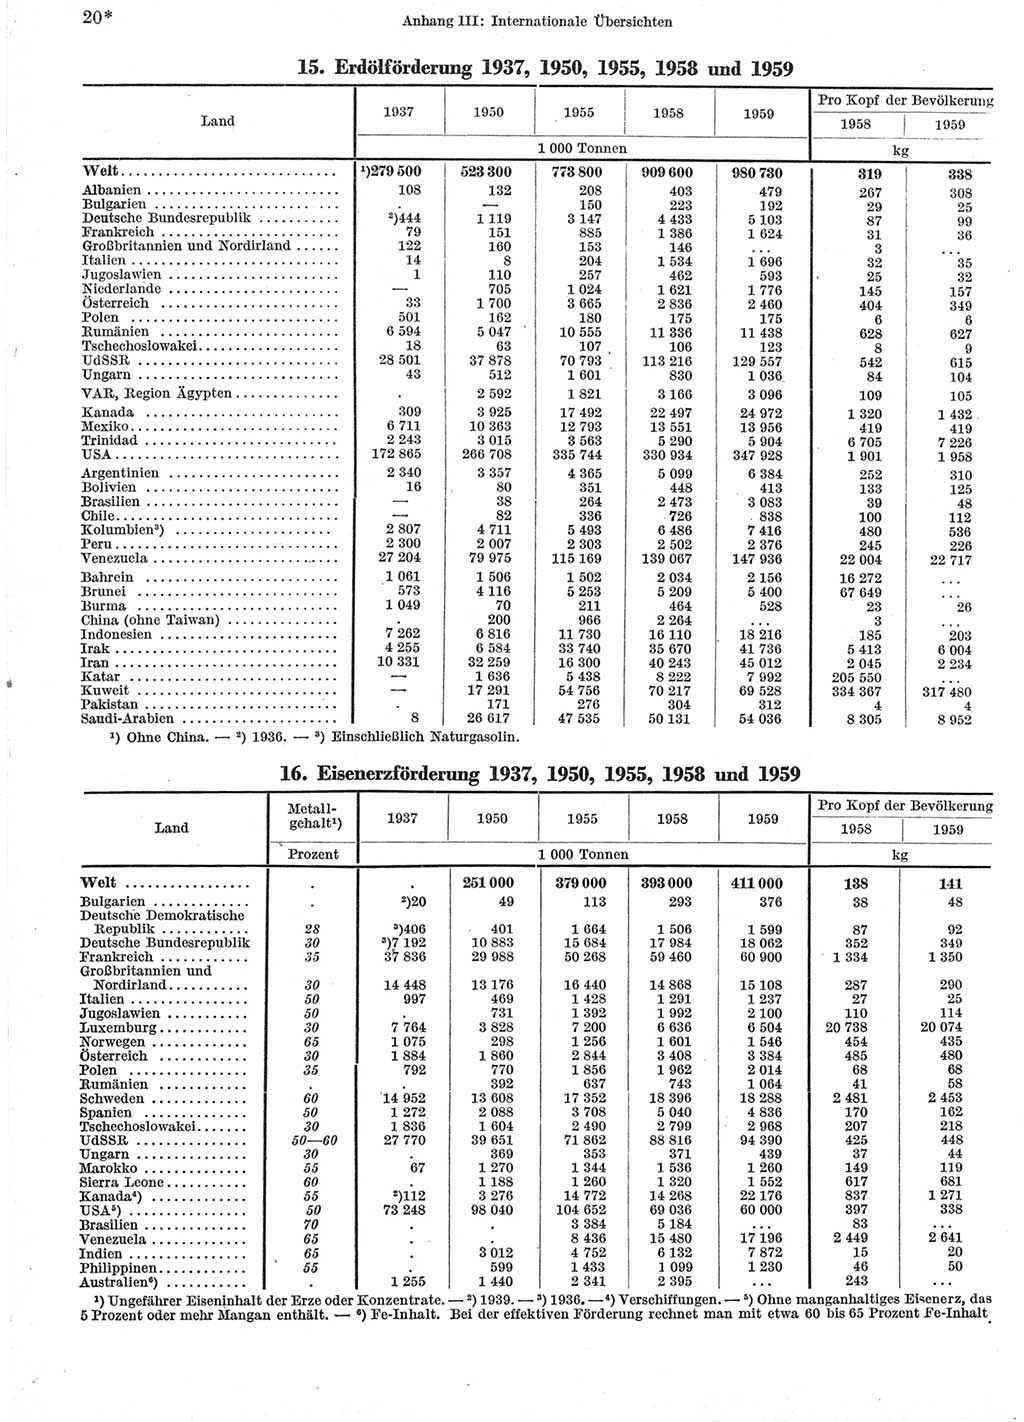 Statistisches Jahrbuch der Deutschen Demokratischen Republik (DDR) 1960-1961, Seite 20 (Stat. Jb. DDR 1960-1961, S. 20)